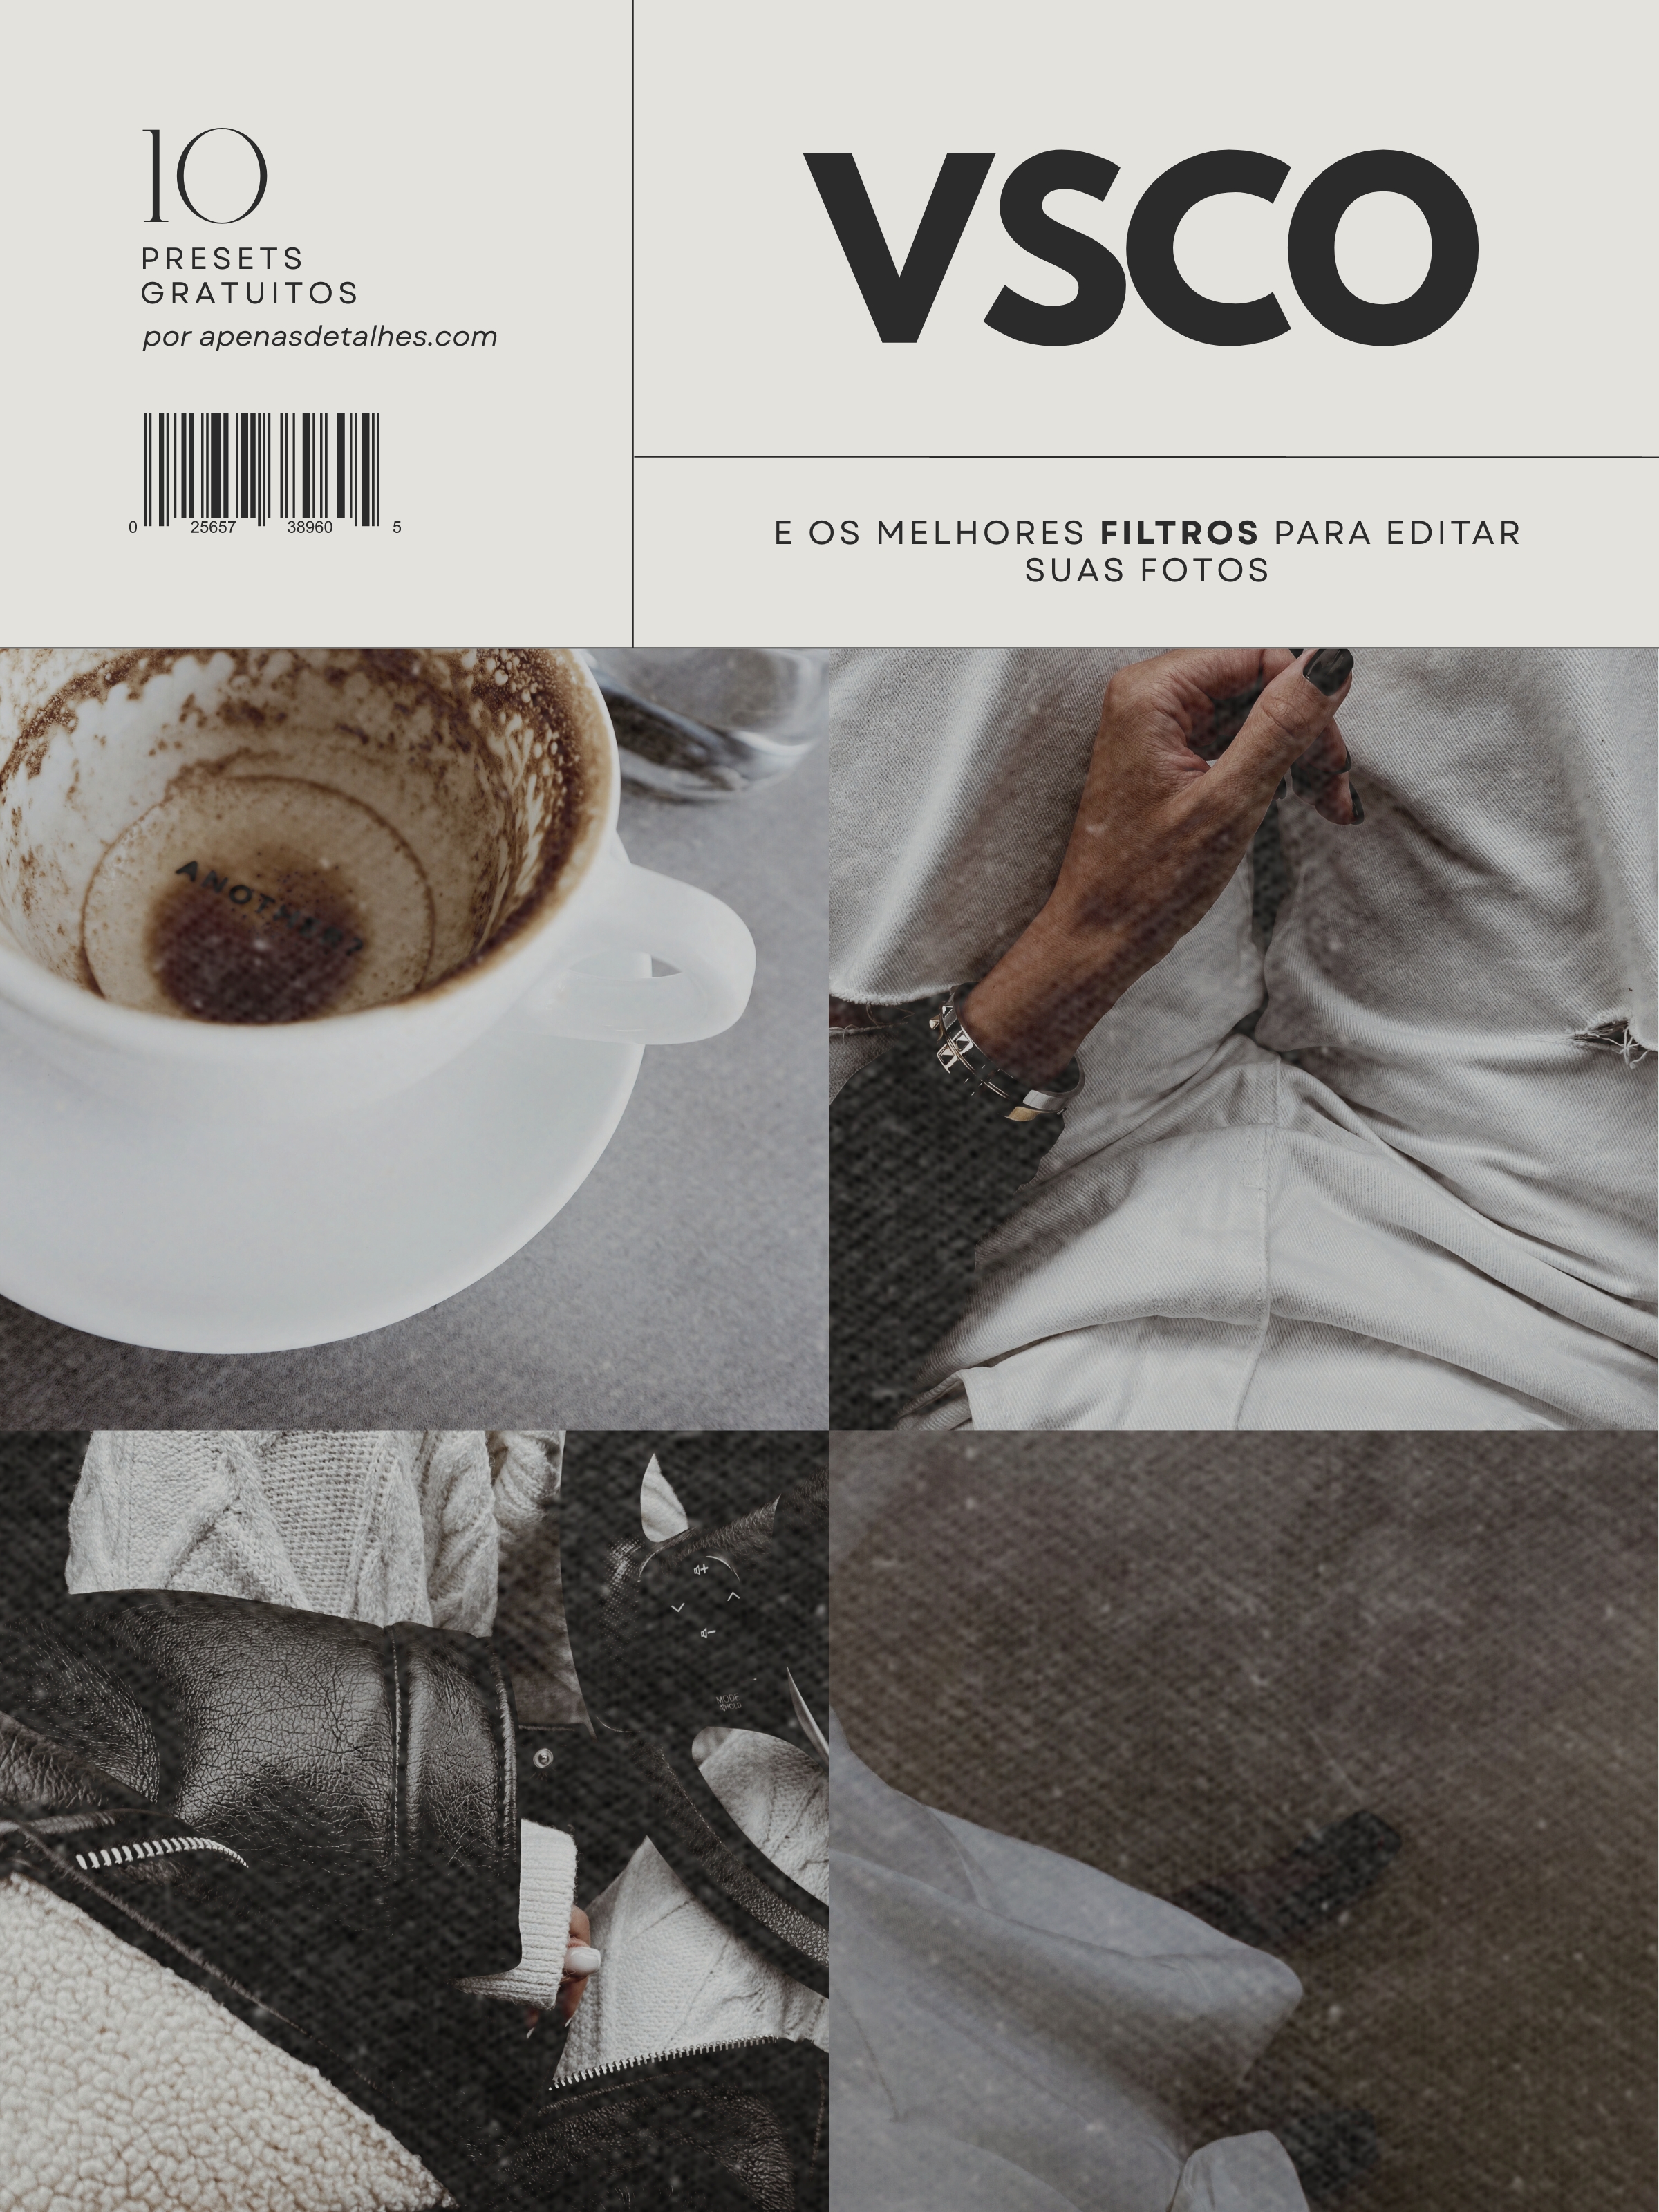 VSCO: os melhores filtros para usar em suas fotos